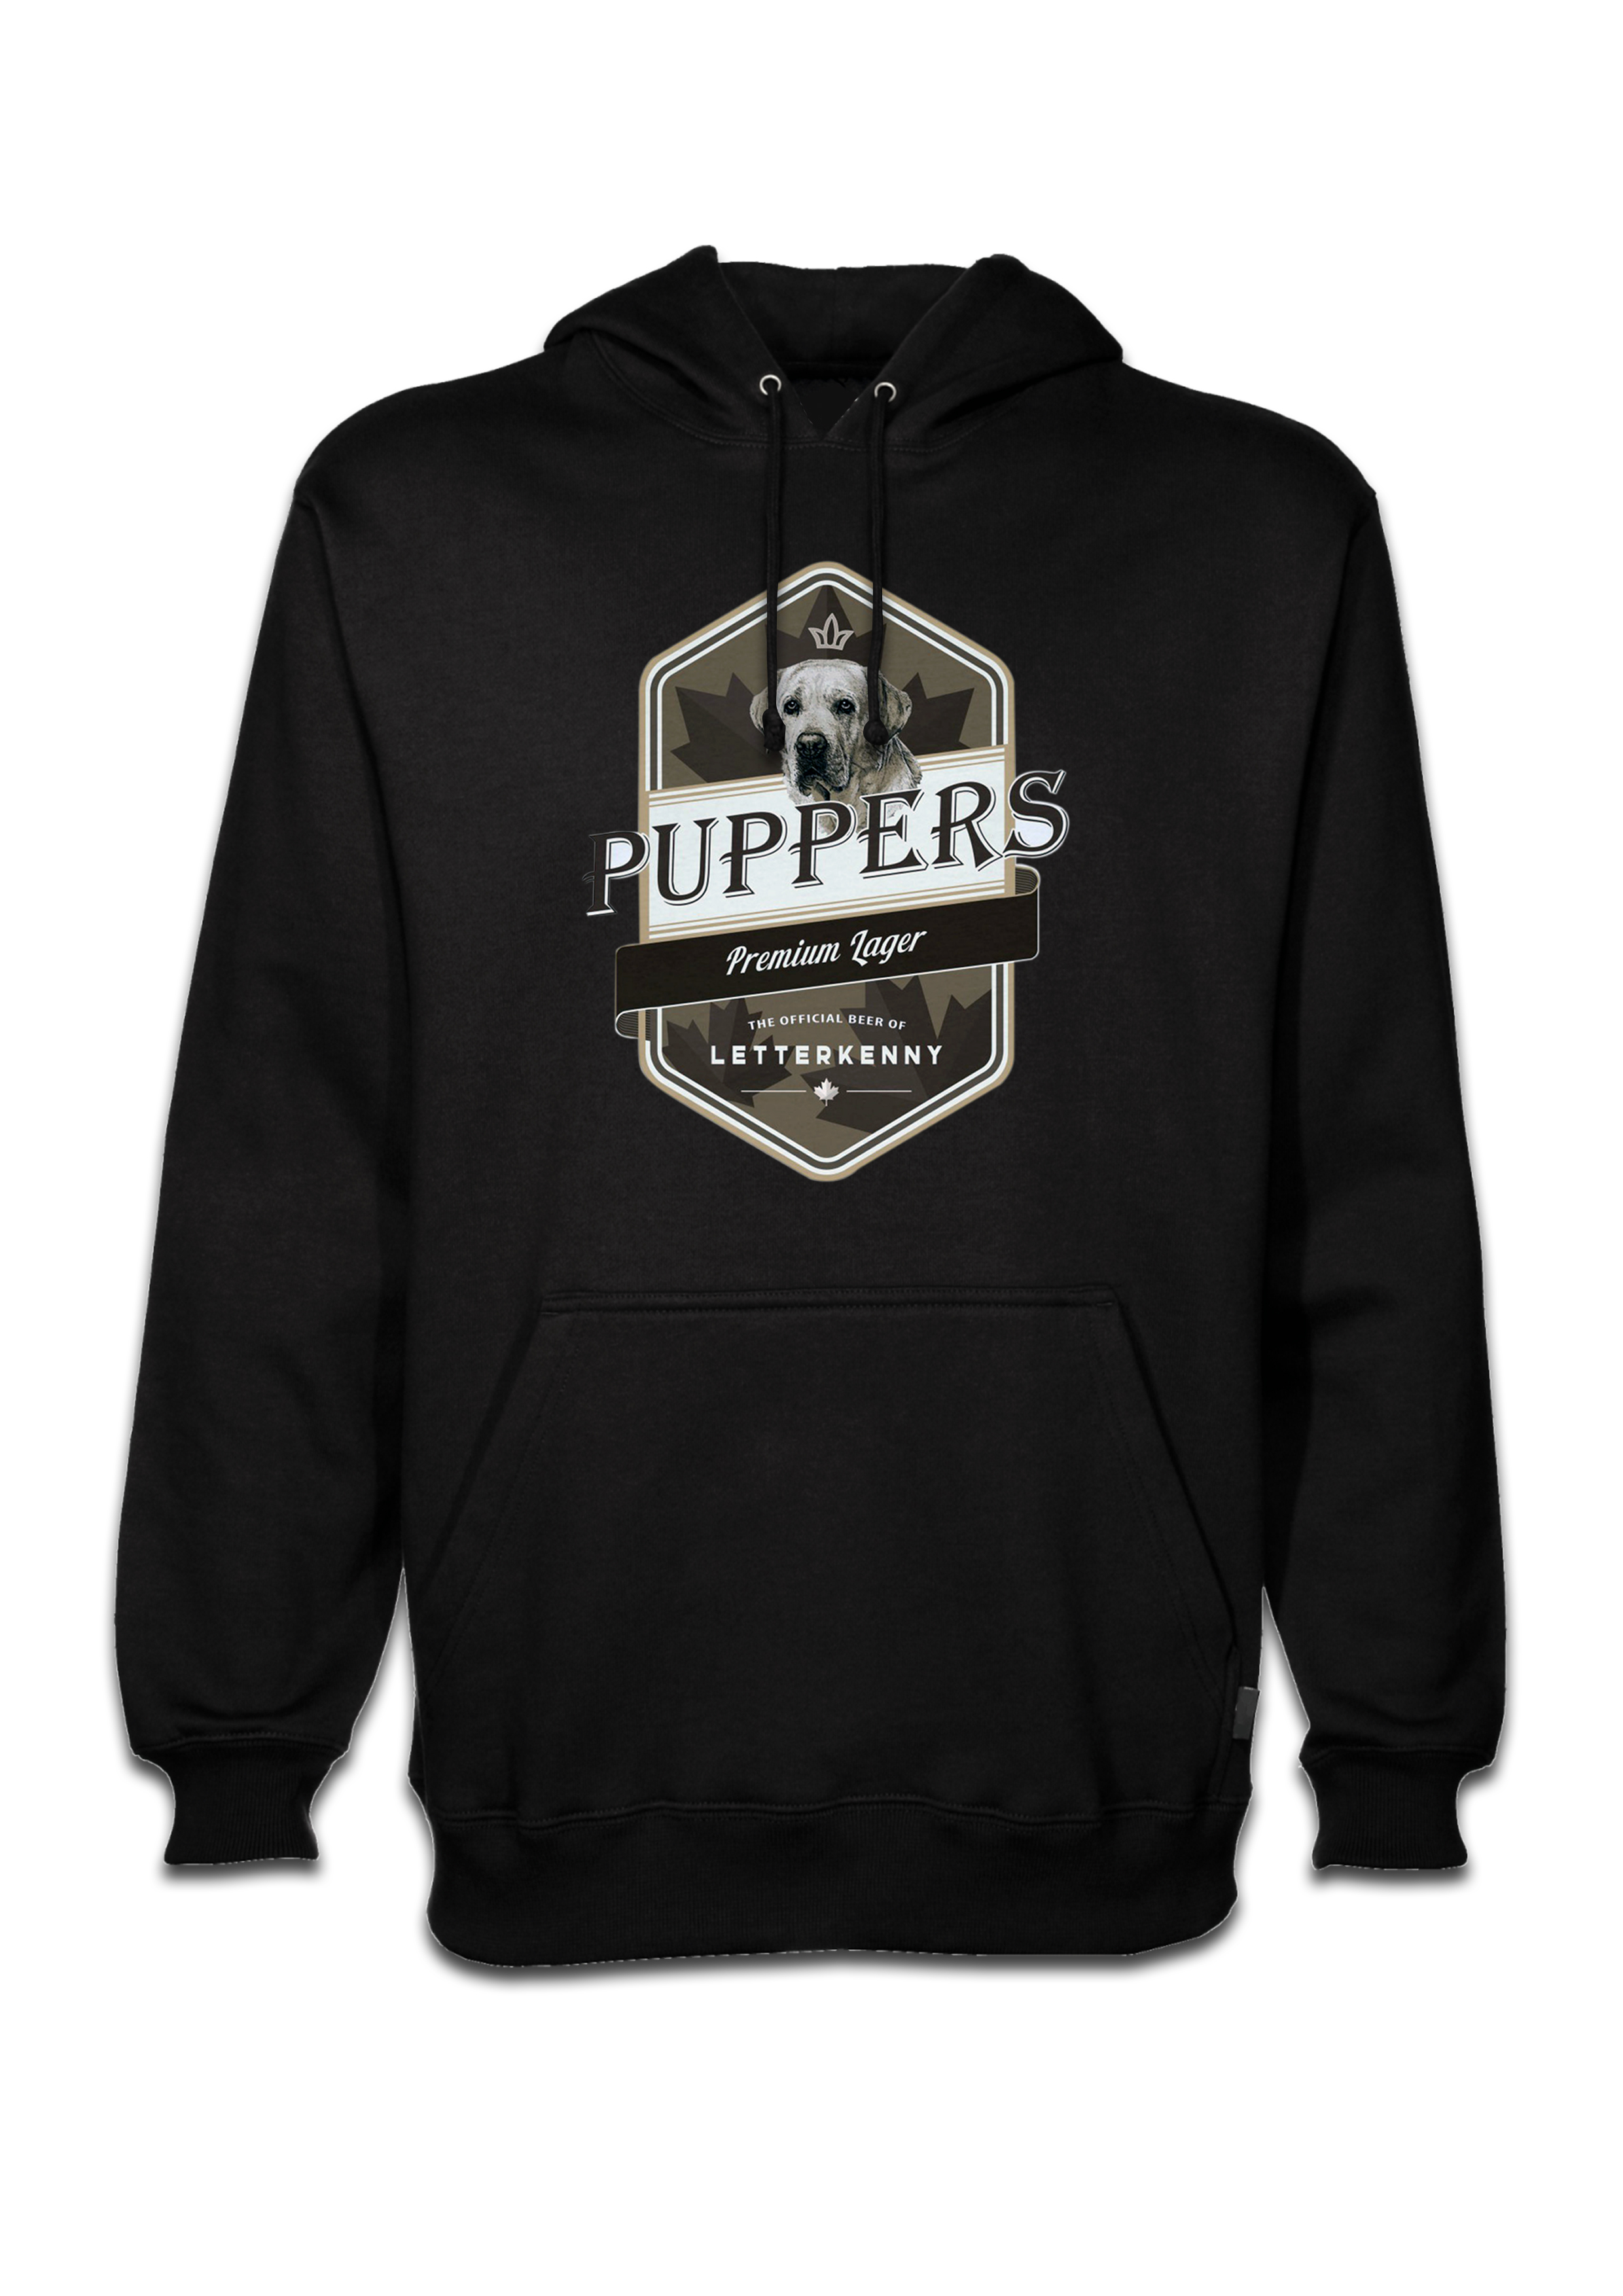 Letterkenny Puppers Premium Lager Beer black hoodie